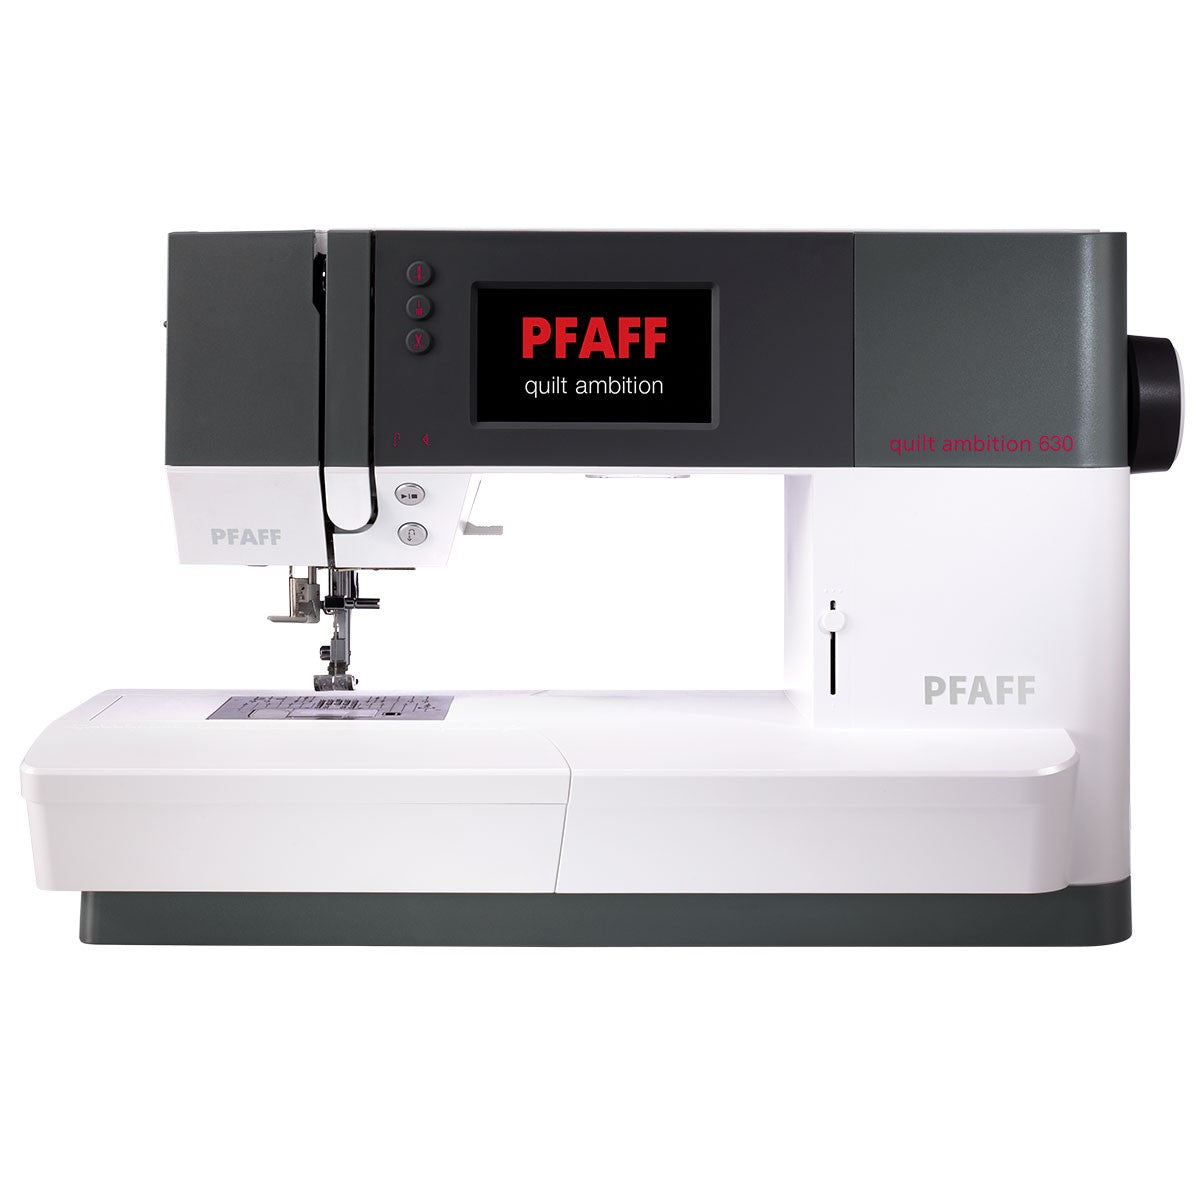 PFAFF Quilt Ambition 630 Sewing Machine